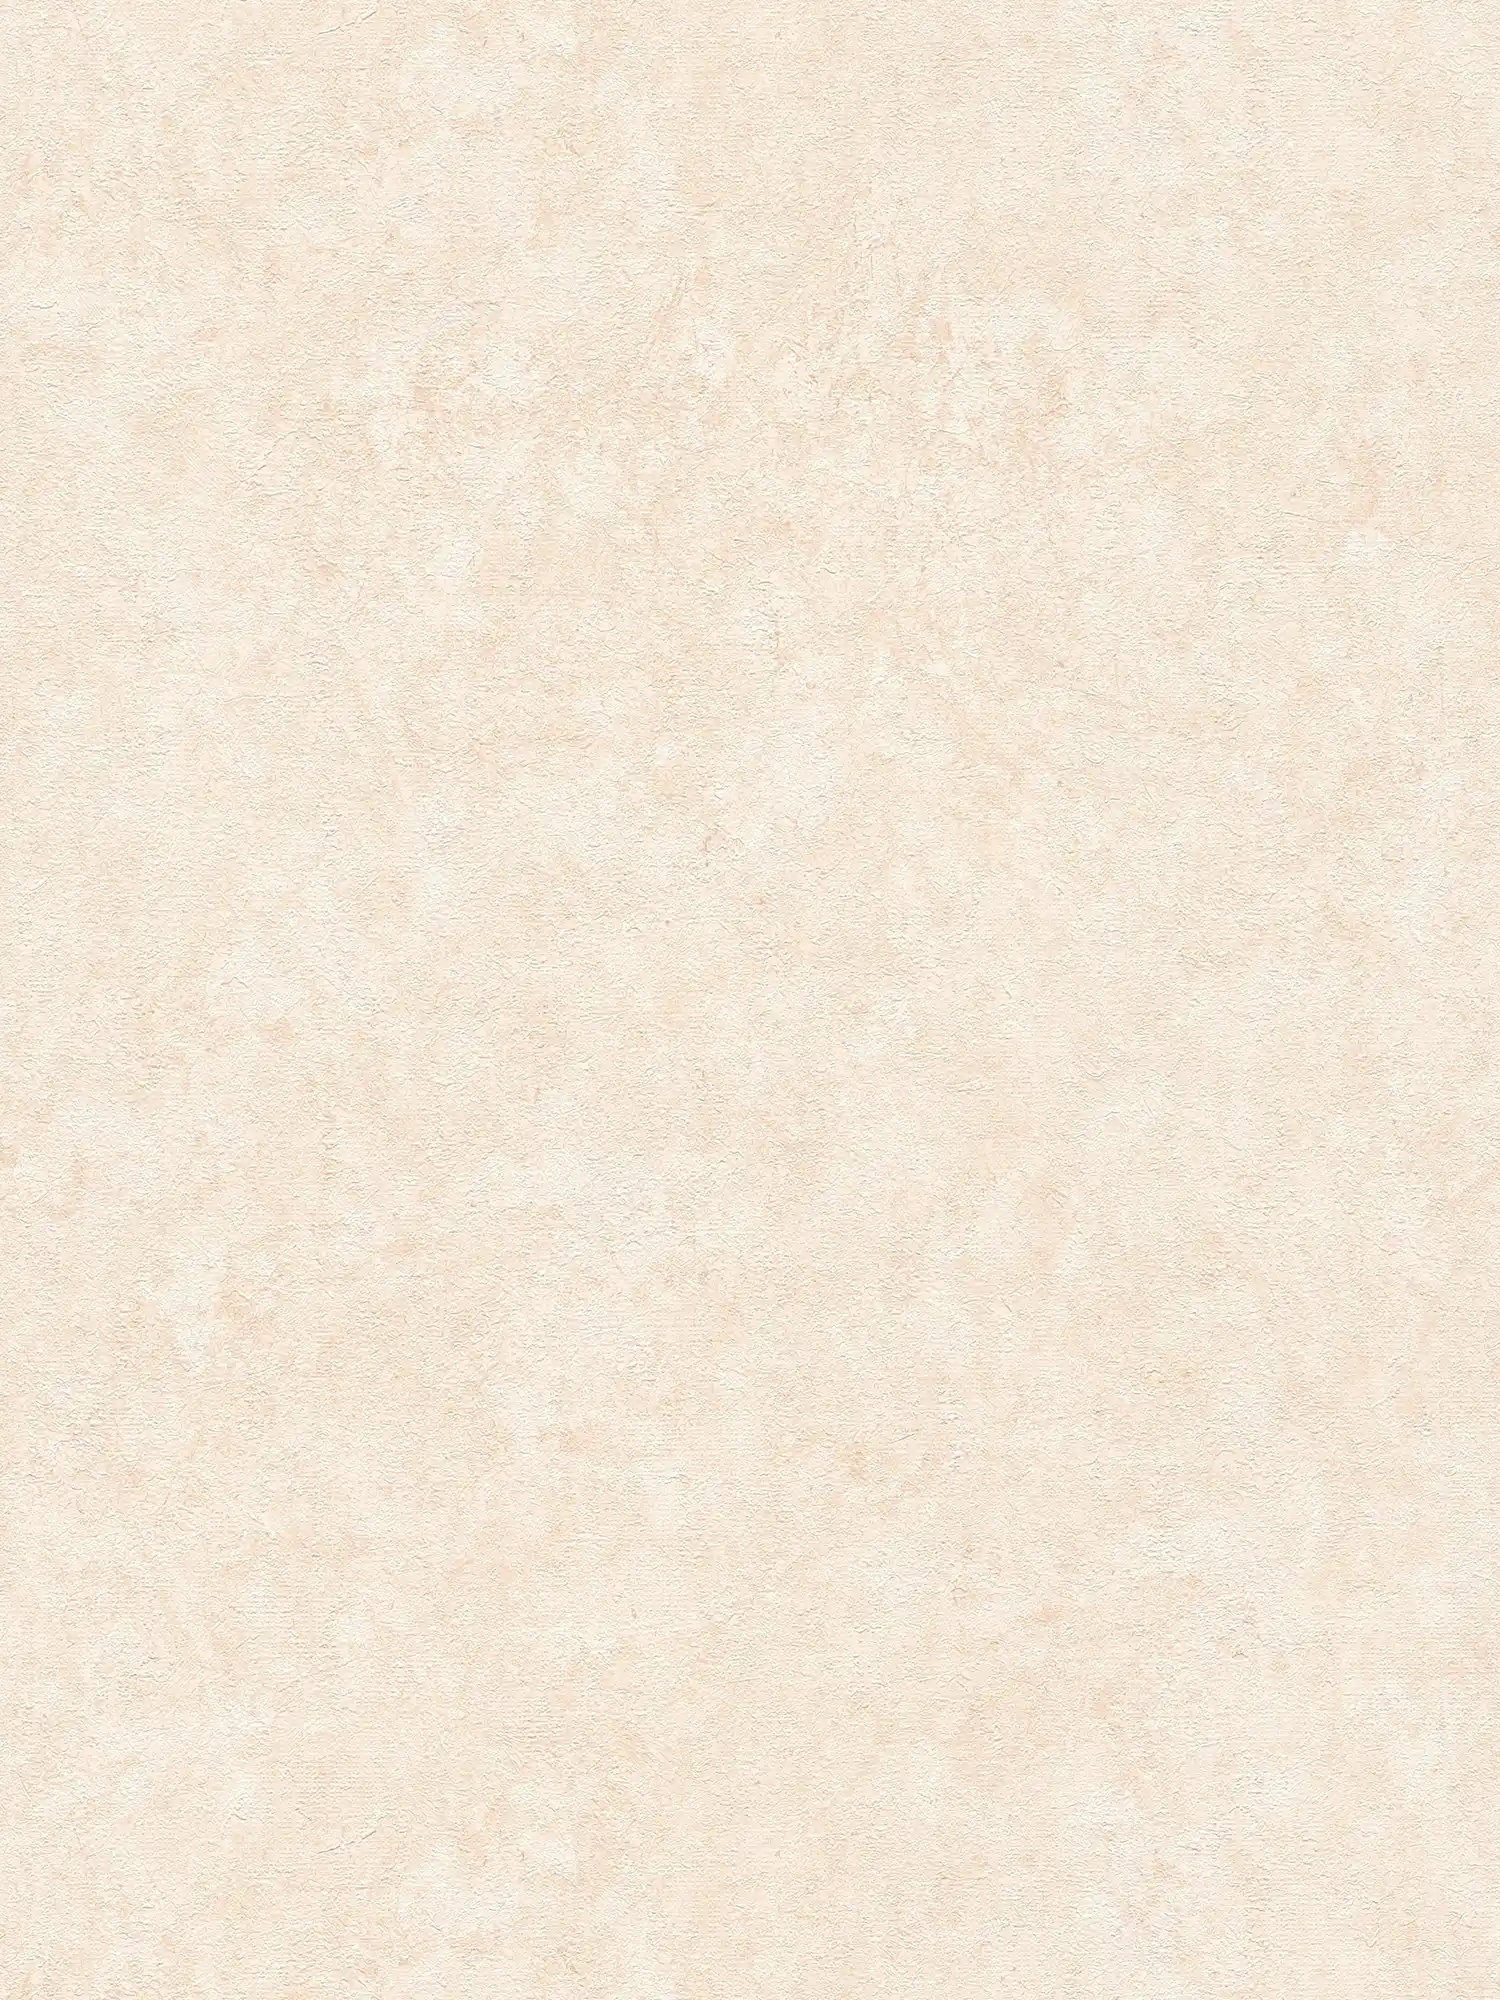 Textured wallpaper in plain subtle shades - cream, beige
